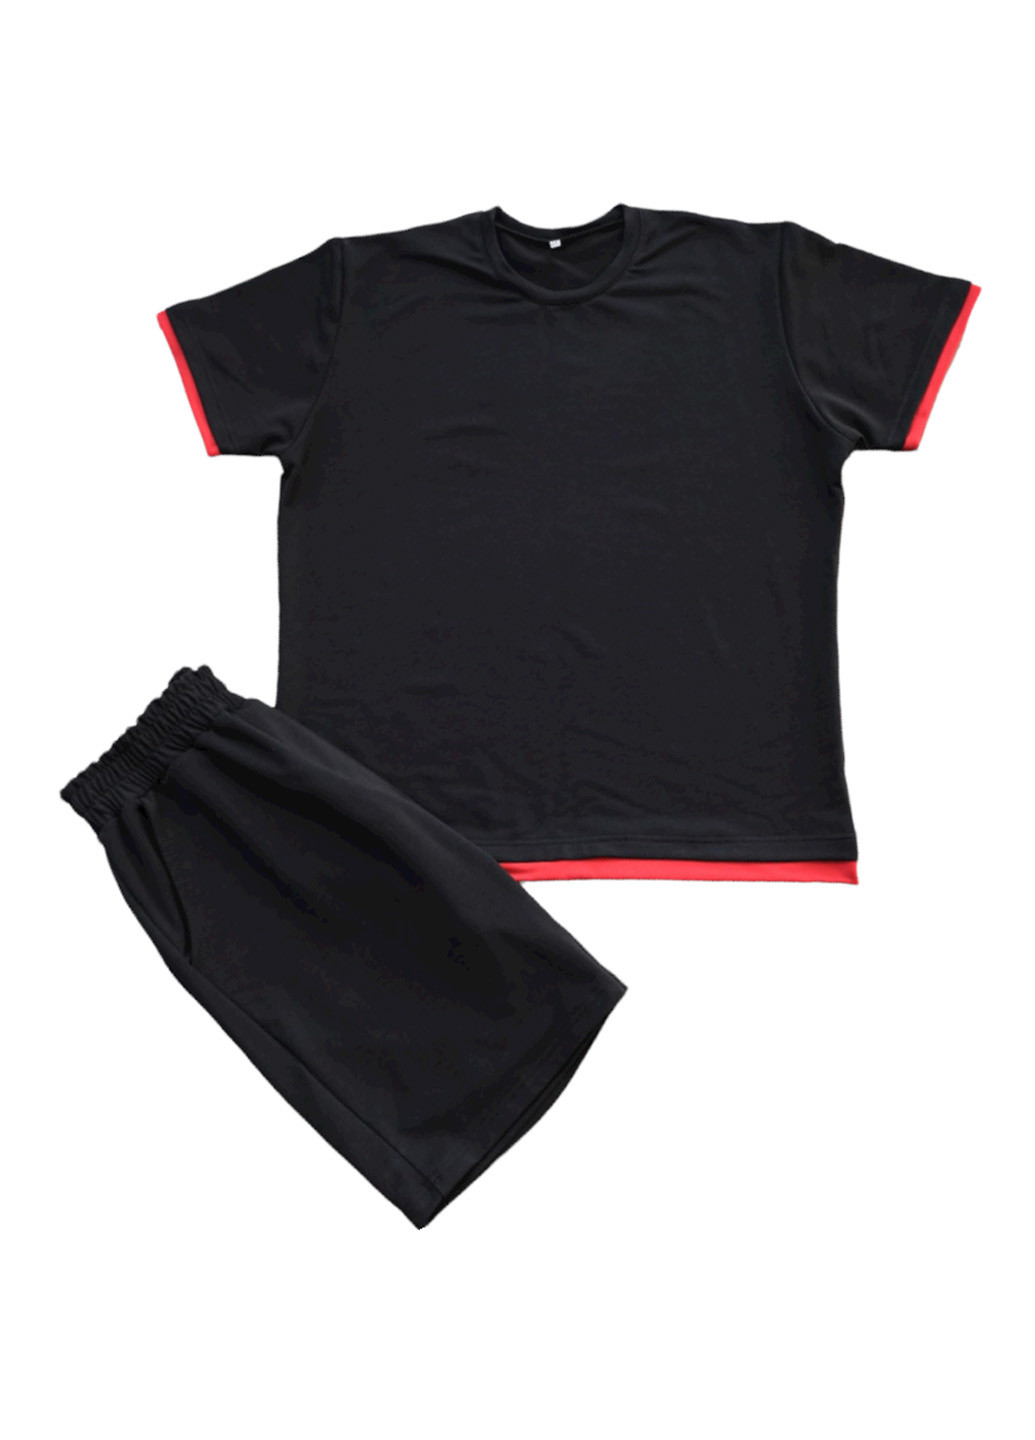 Черный базовый костюм (футболка и шорты) ShopnGo